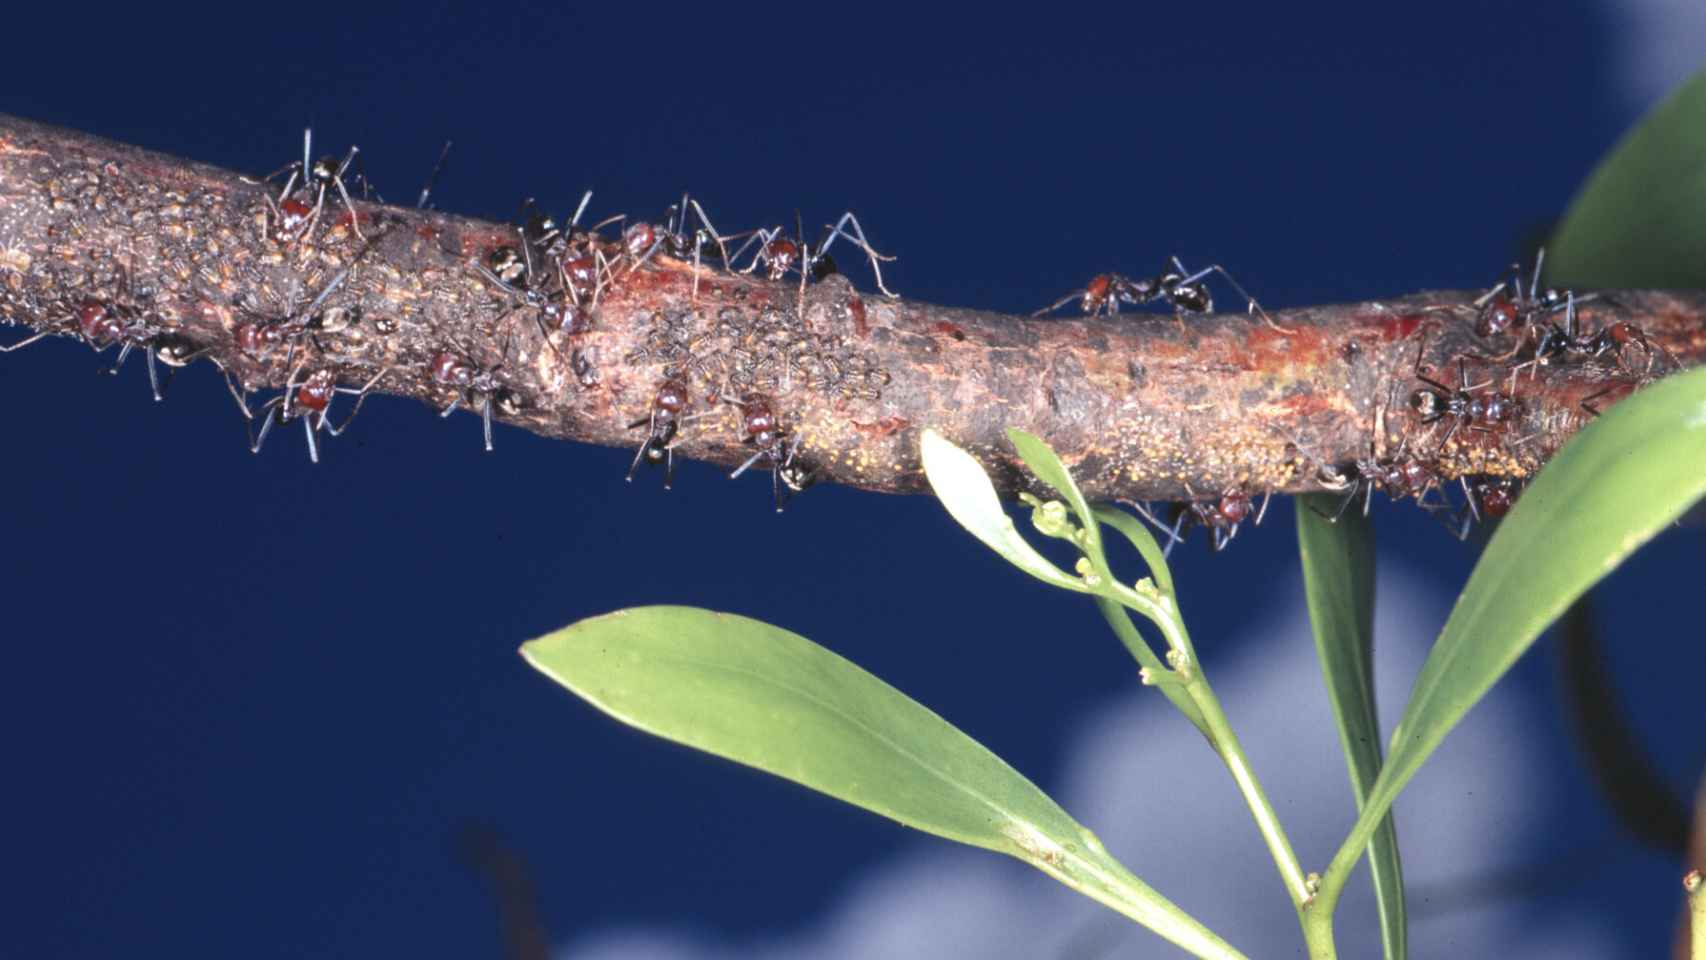 La búsqueda de alimento condiciona las redes de las hormigas.